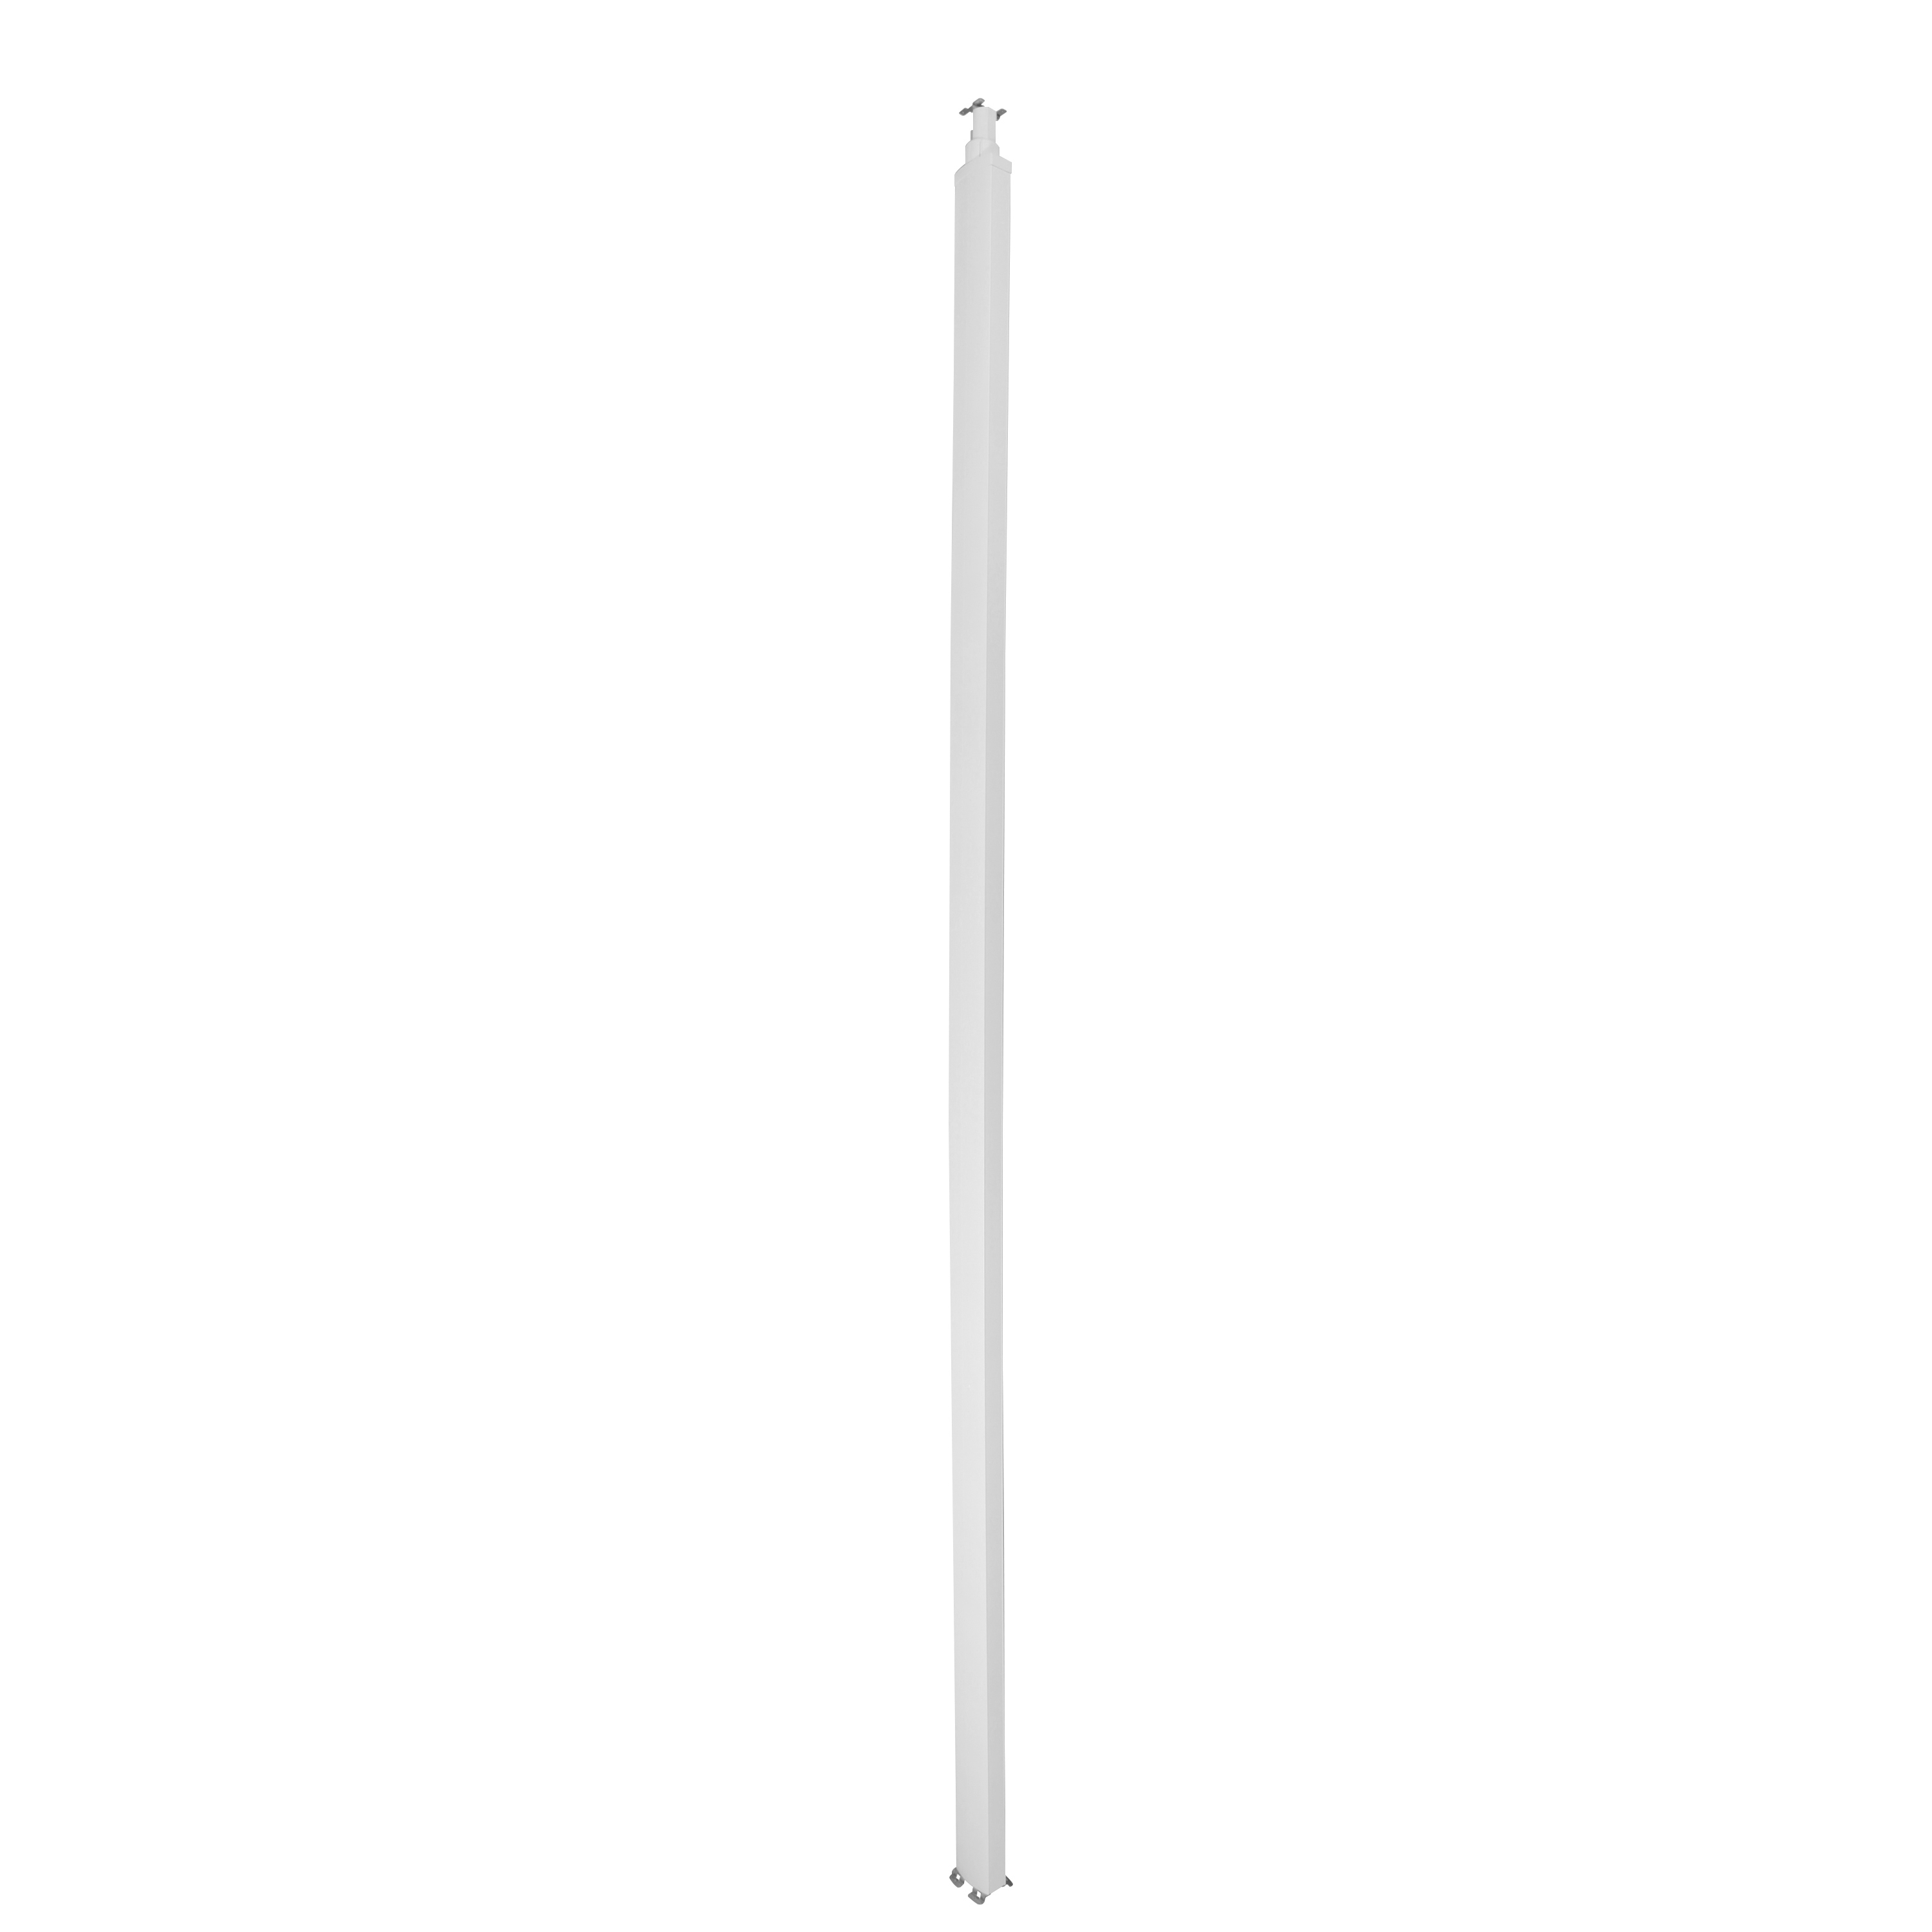 Snap-On колонна пластиковая с крышкой из пластика 2 секции 4,02 метра, с возможностью увеличения высоты колонны до 5,3 метра, цвет белый 653033 Legrand